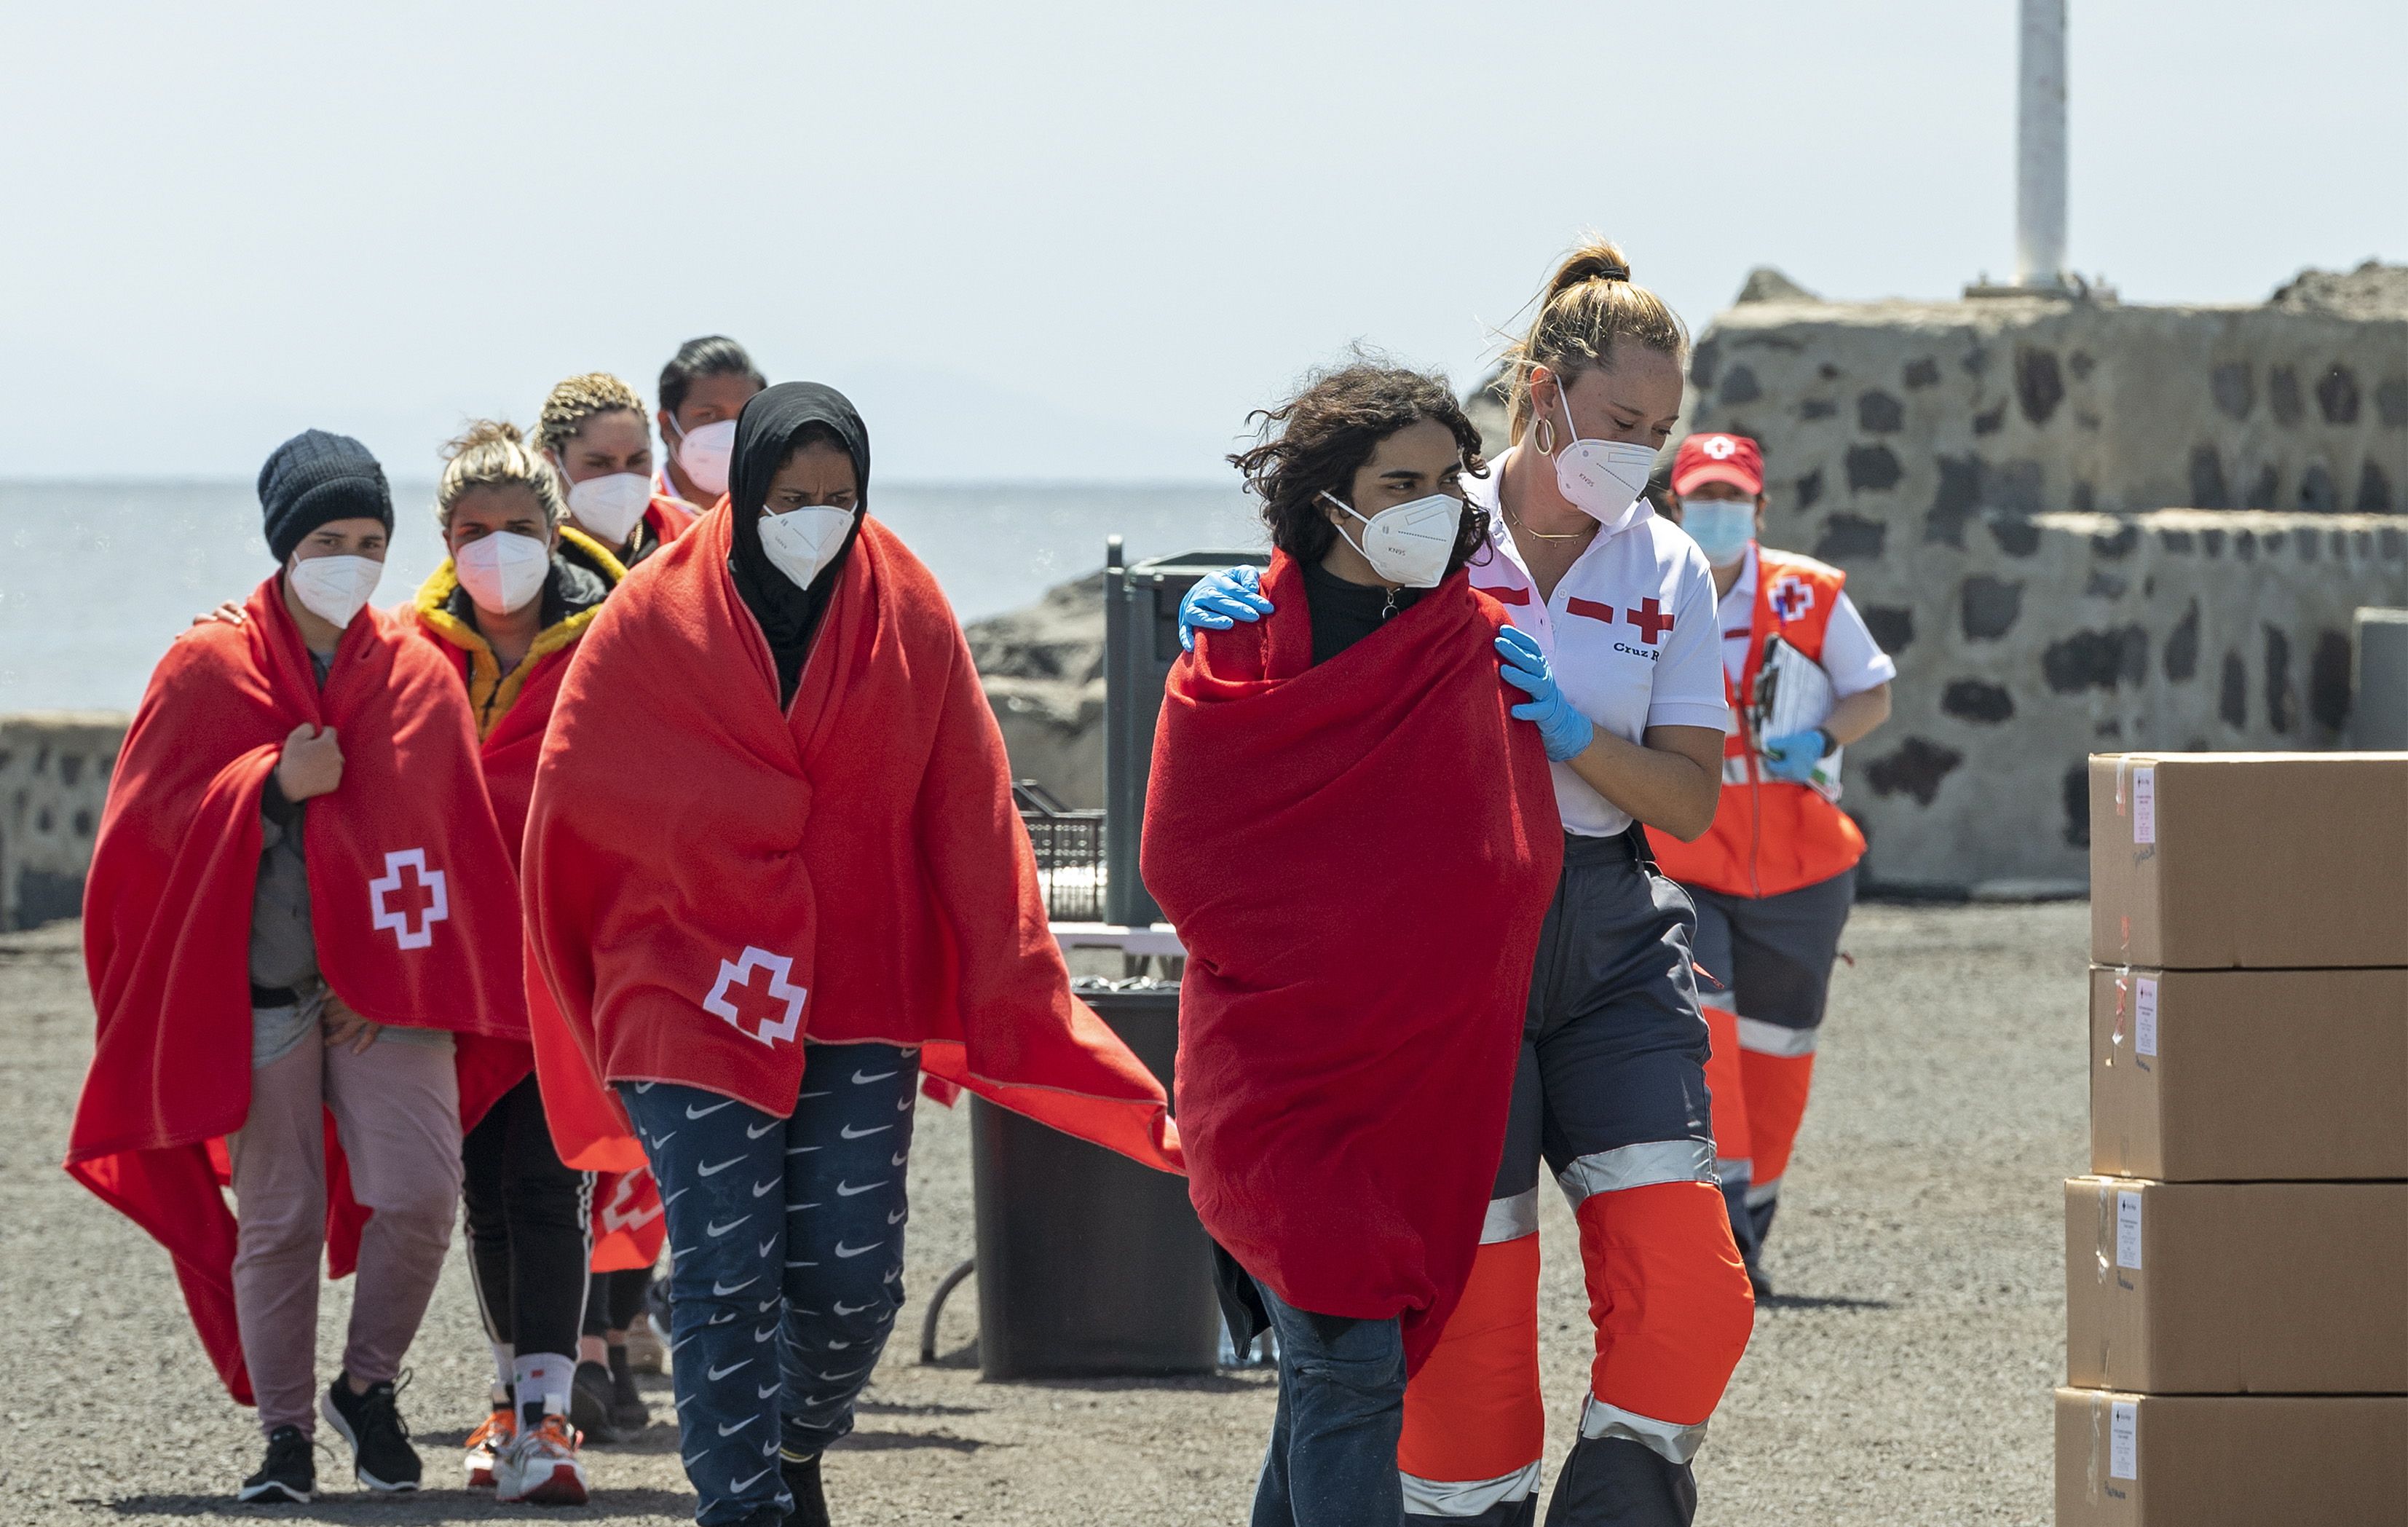 Personas migrantes llegadas al muelle de Arrecife tras ser rescatadas de dos pateras en la Ruta Canaria el pasado jueves 27 de abril. EFE/Adriel Perdomo